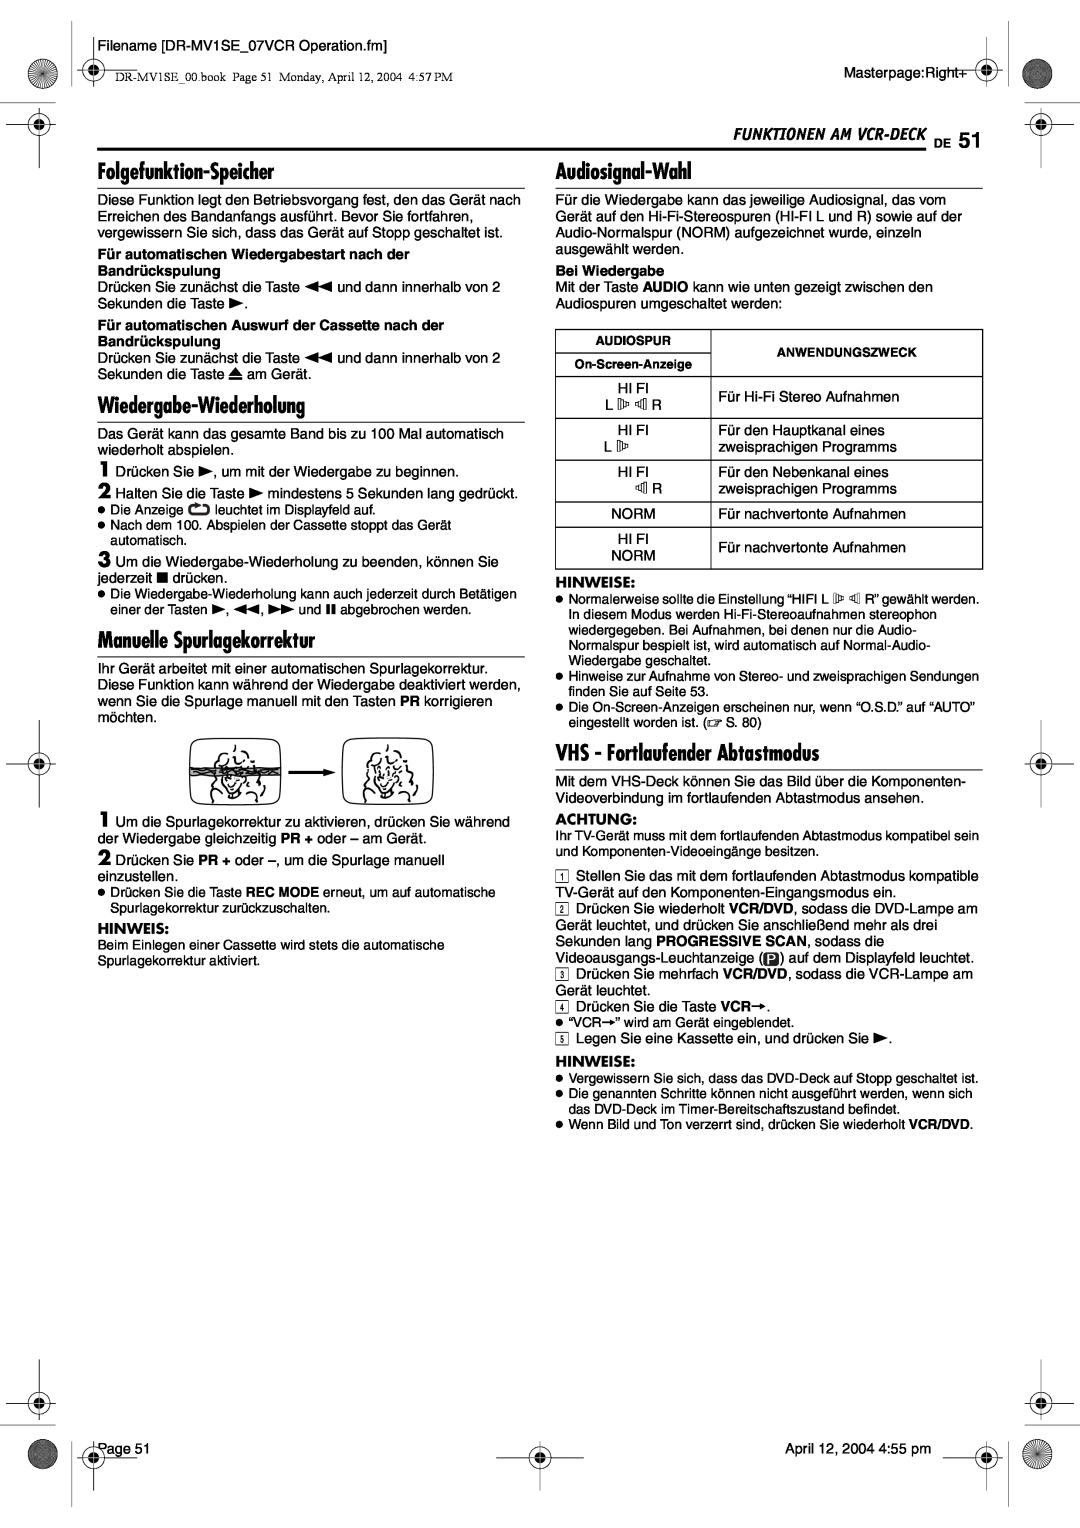 JVC DR-MV1S Folgefunktion-Speicher, Manuelle Spurlagekorrektur, VHS - Fortlaufender Abtastmodus, Wiedergabe-Wiederholung 